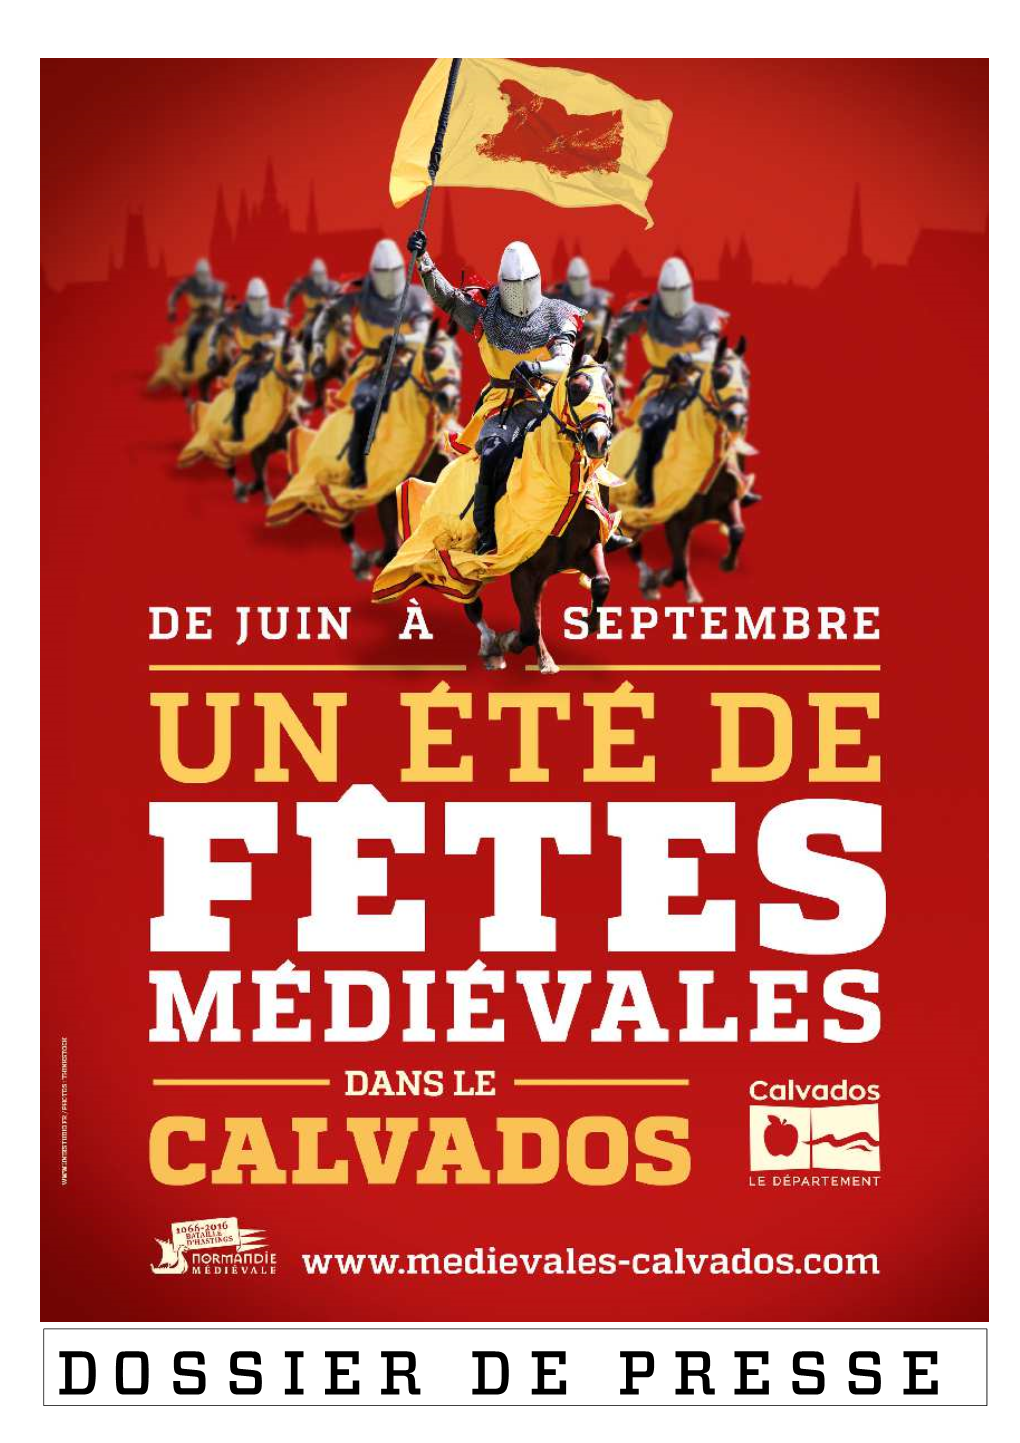 DOSSIER DE PRESSE - Un Été Médiéval Dans Le Calvados, 2016 - Edition Mars 2016 2 2016, UN ÉTÉ DE FÊTES MÉDIÉVALES DANS LE CALVADOS